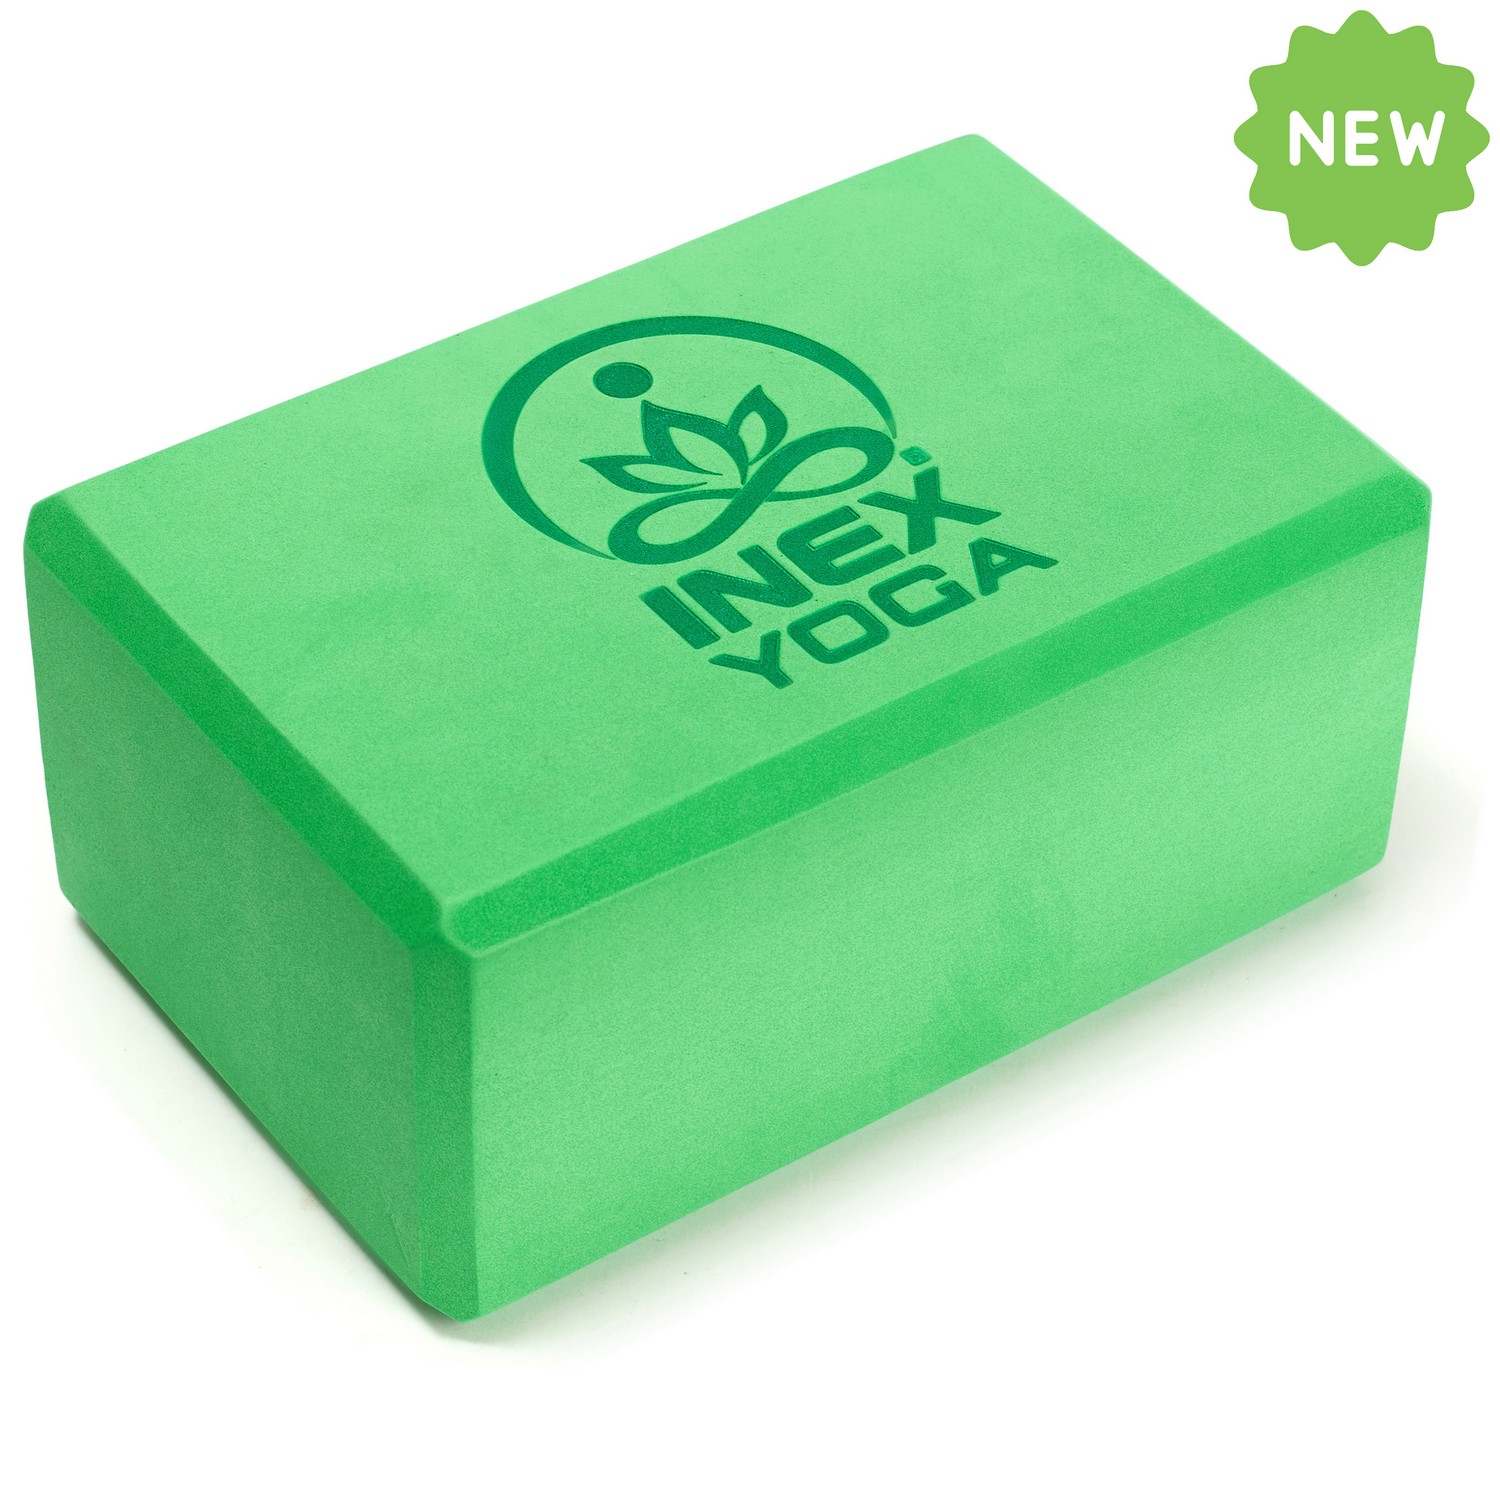 Купить Блок для йоги Intex EVA Yoga Block YGBK-GG 23x15x10 см, зеленый,